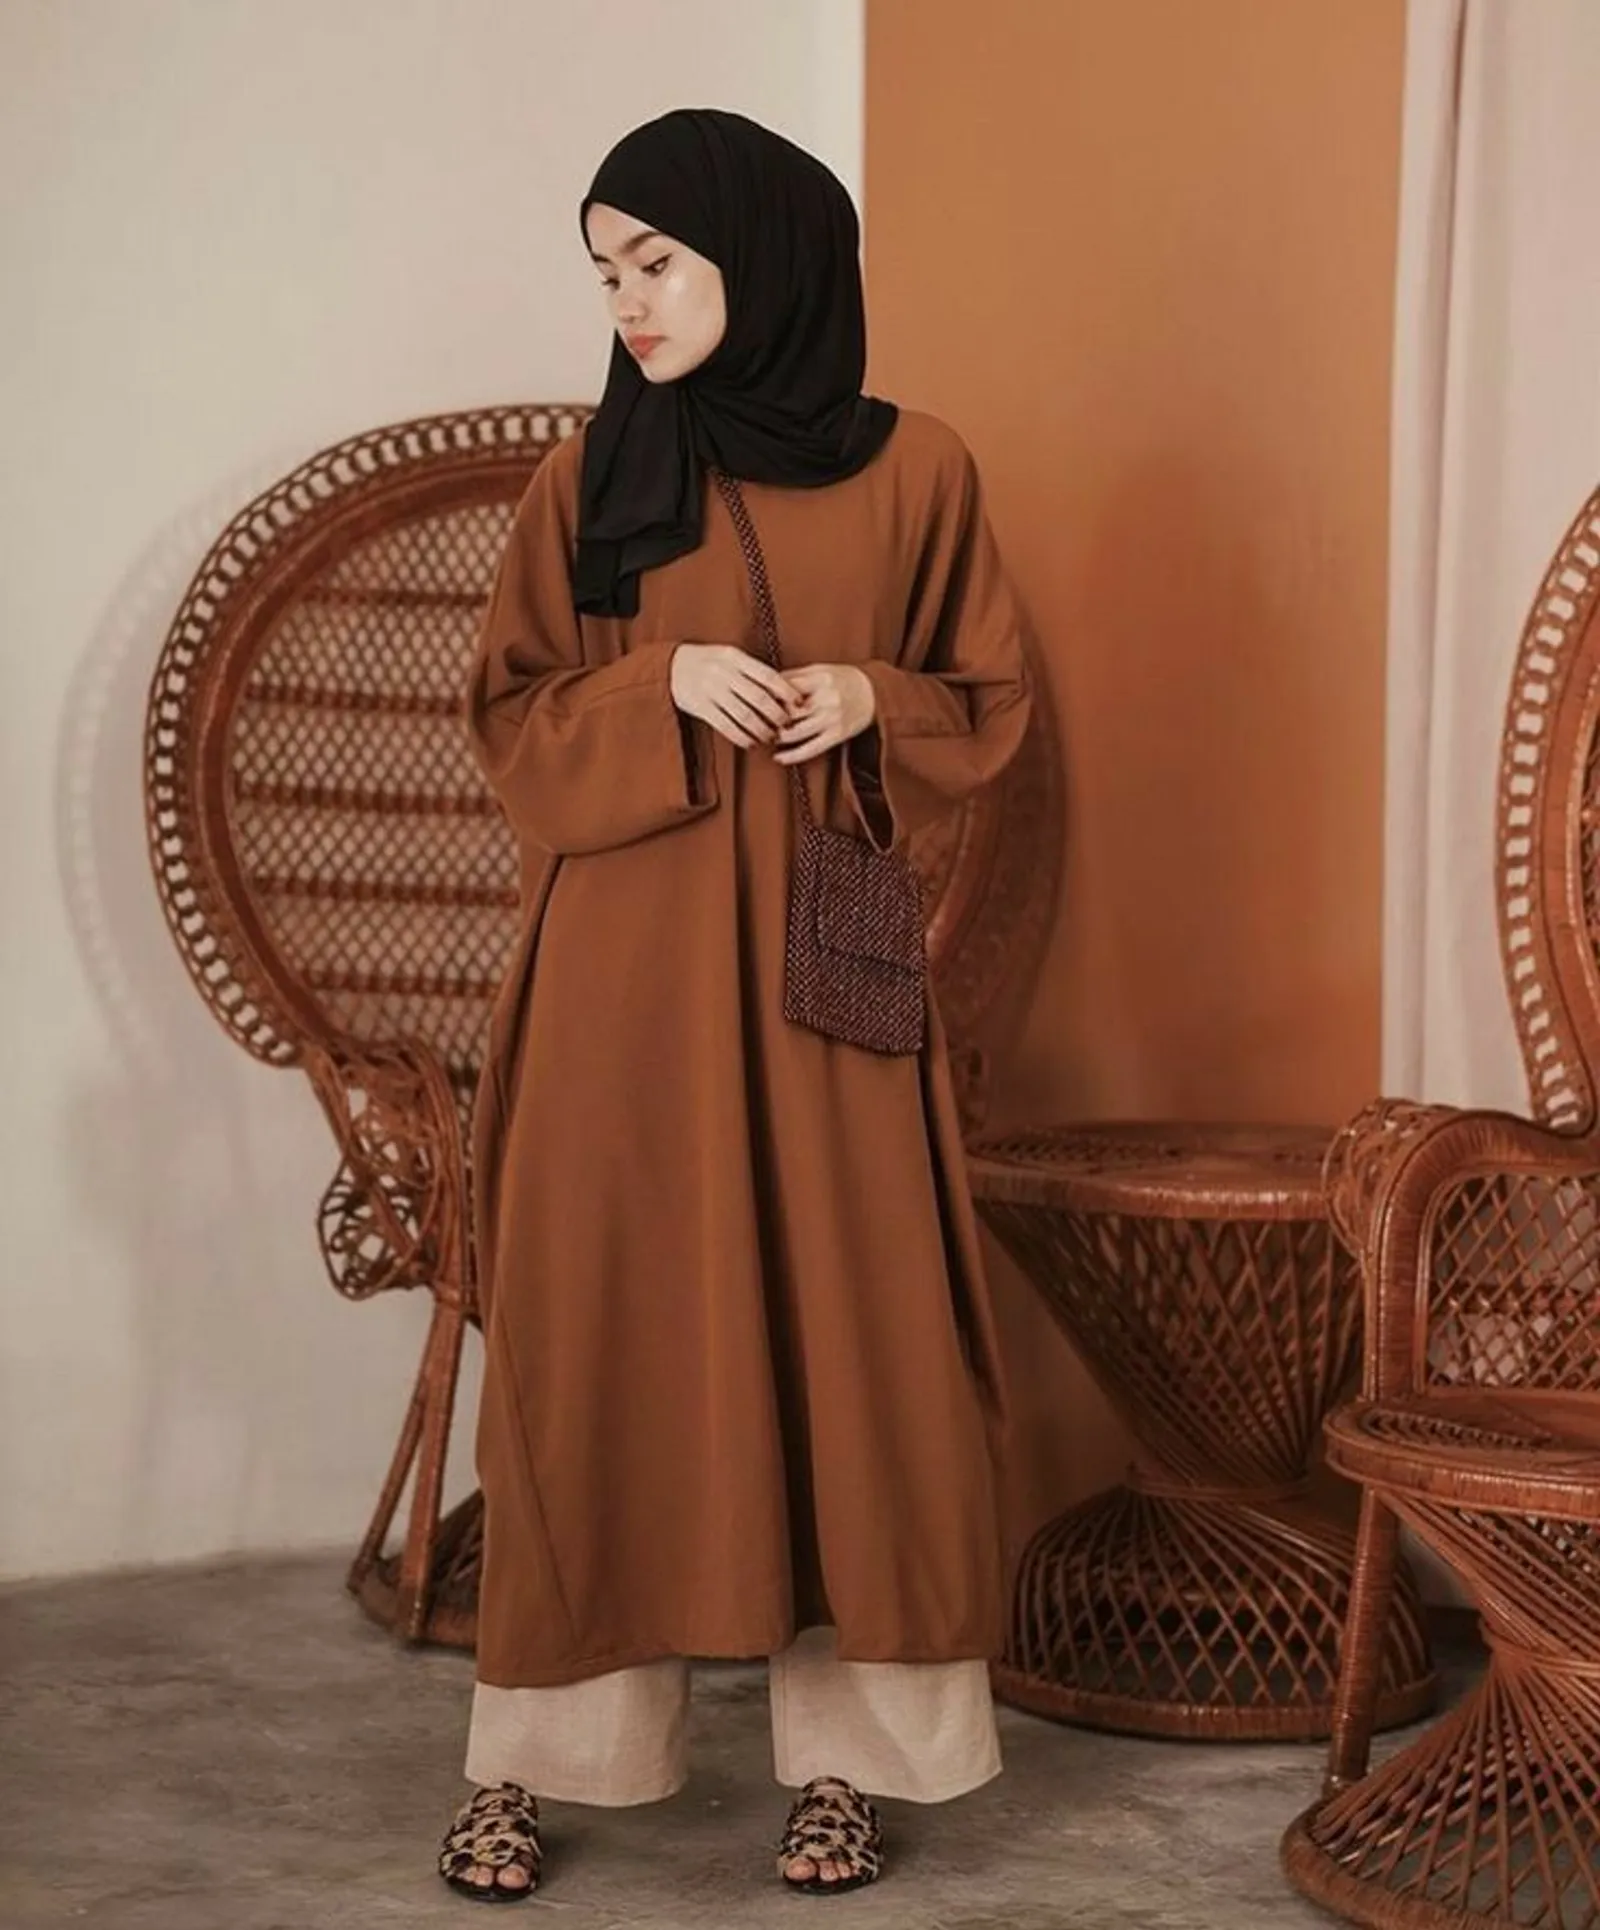 Baju Cokelat Tua Cocok dengan Jilbab Warna apa? Simak Idenya